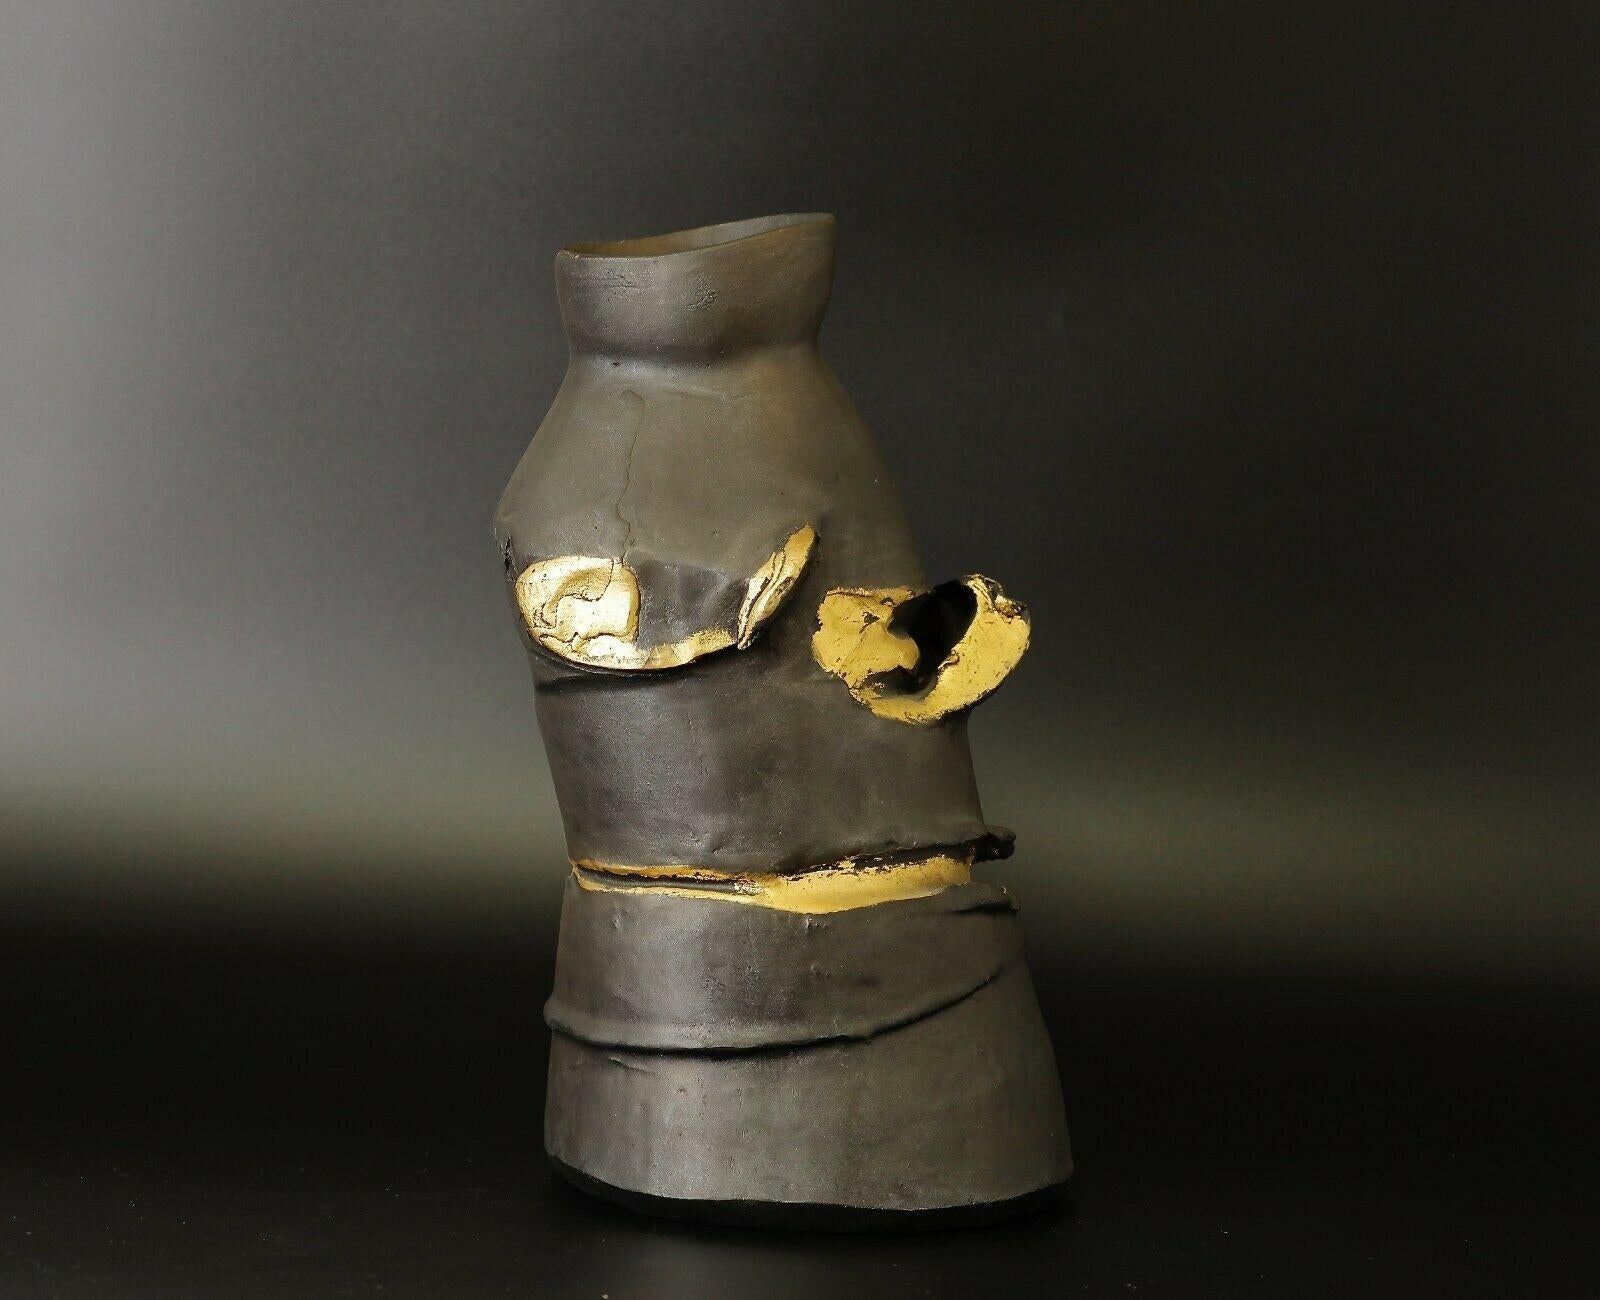 Seltene und spektakuläre Masuo Ikeda Bronze Gefäß / Vase mit Gold Details. 
Es handelt sich um eine limitierte Auflage von 28/30 Exemplaren und ist signiert. Kommt mit seiner ursprünglichen Holzkiste (tomobako).

 Ikeda Masuo ( 池田 満寿夫 ) war ein